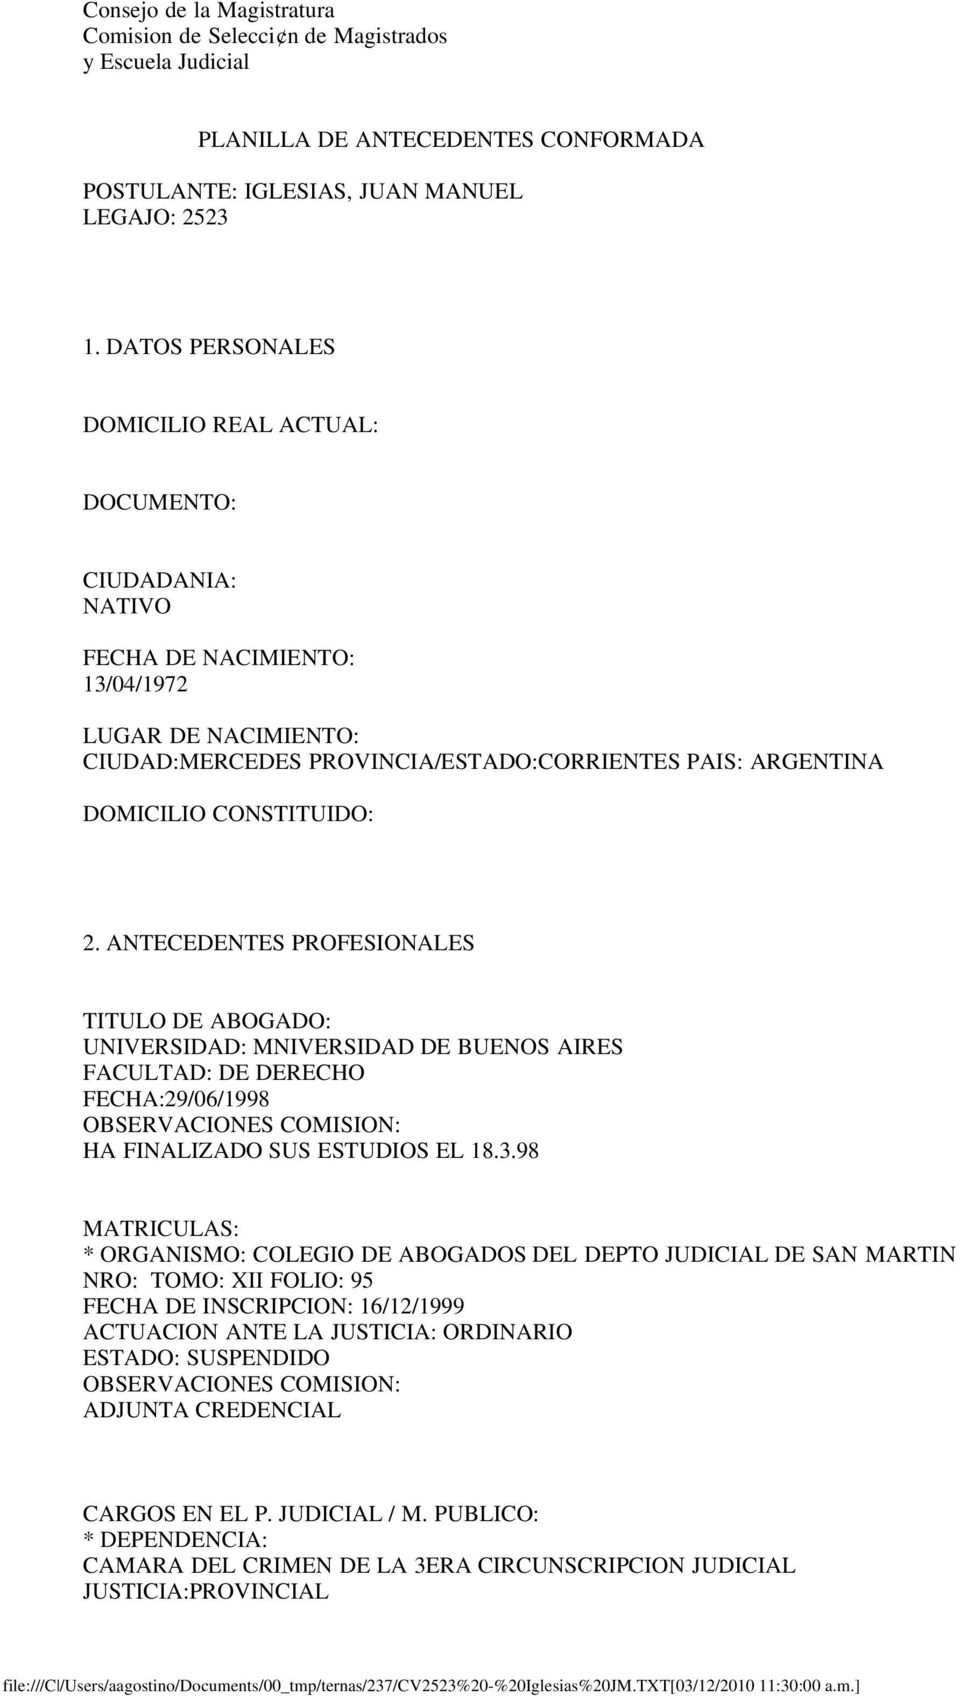 ANTECEDENTES PROFESIONALES TITULO DE ABOGADO: UNIVERSIDAD: MNIVERSIDAD DE BUENOS AIRES FACULTAD: DE DERECHO FECHA:29/06/1998 HA FINALIZADO SUS ESTUDIOS EL 18.3.